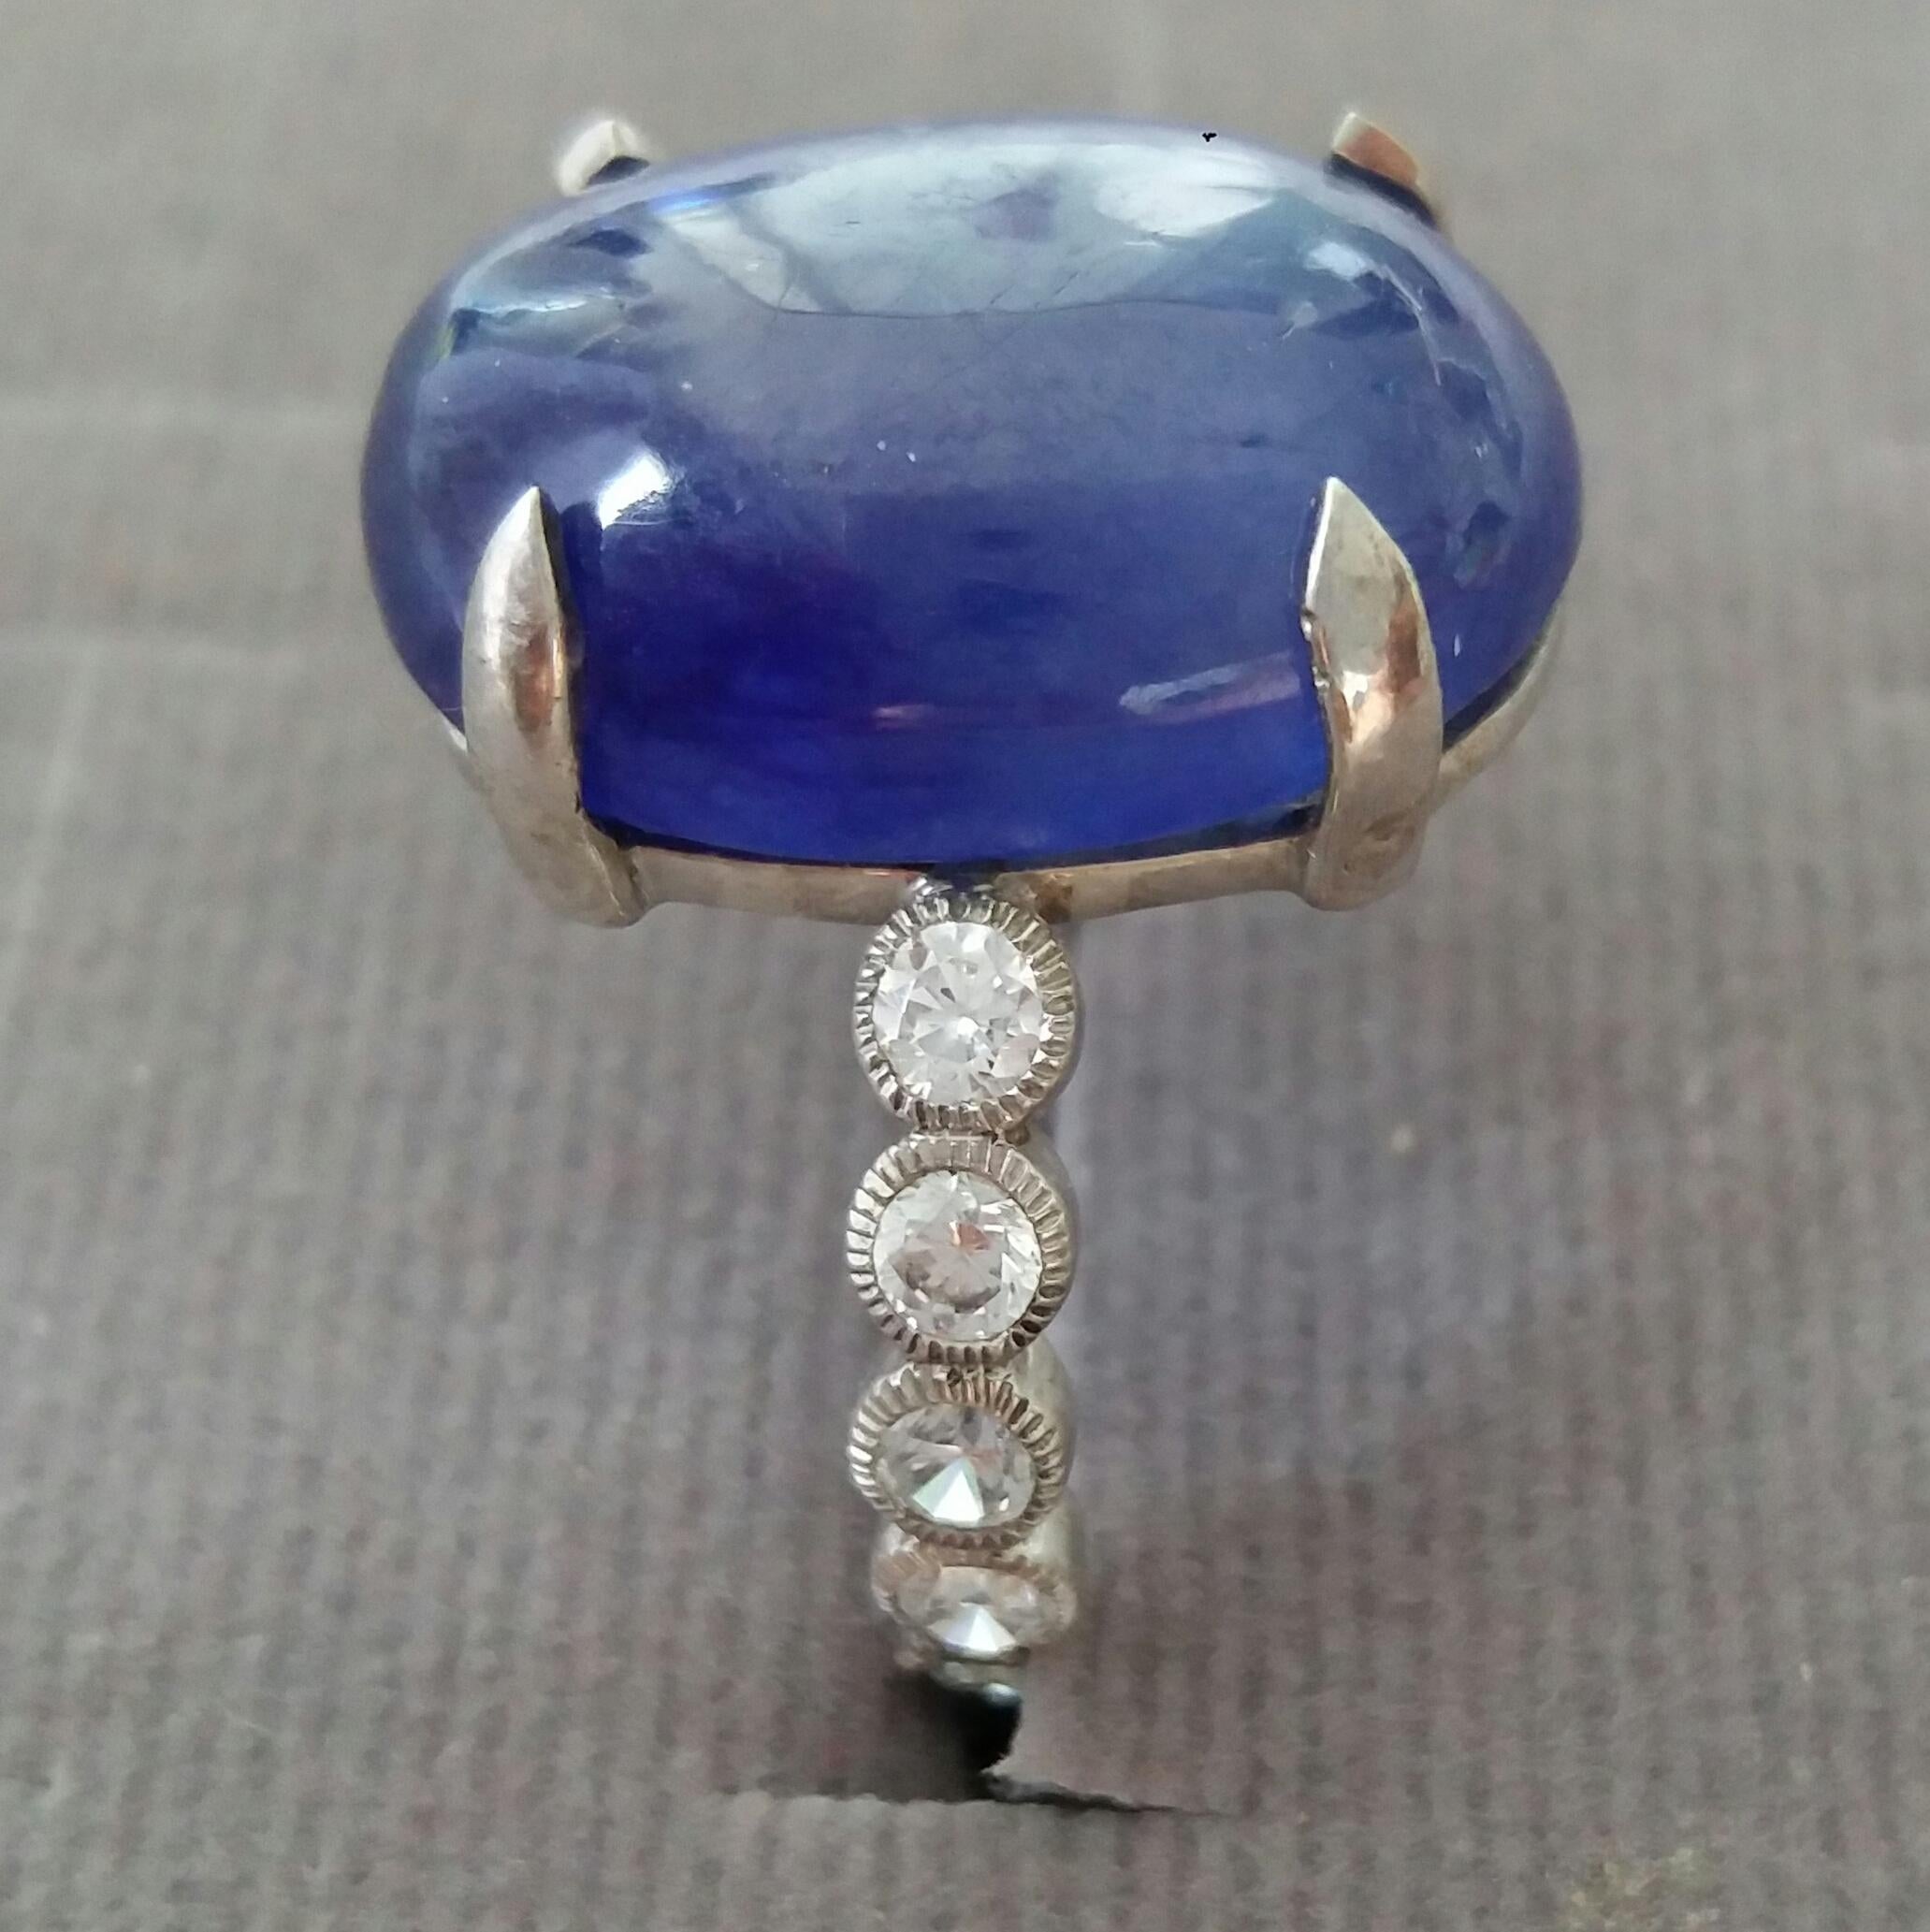 bague Cab ovale en saphir bleu de 17 carats ( 17,5 mm x 13 mm )  serti de 3,3 grammes d'or blanc 14 kt. 12 diamants ronds pleine taille de 0,05 ct. chacun = 0,6 ct poids total de diamants
Diamètre de la tige de l'anneau  23 mm
Hauteur 25 mm
Poids 6